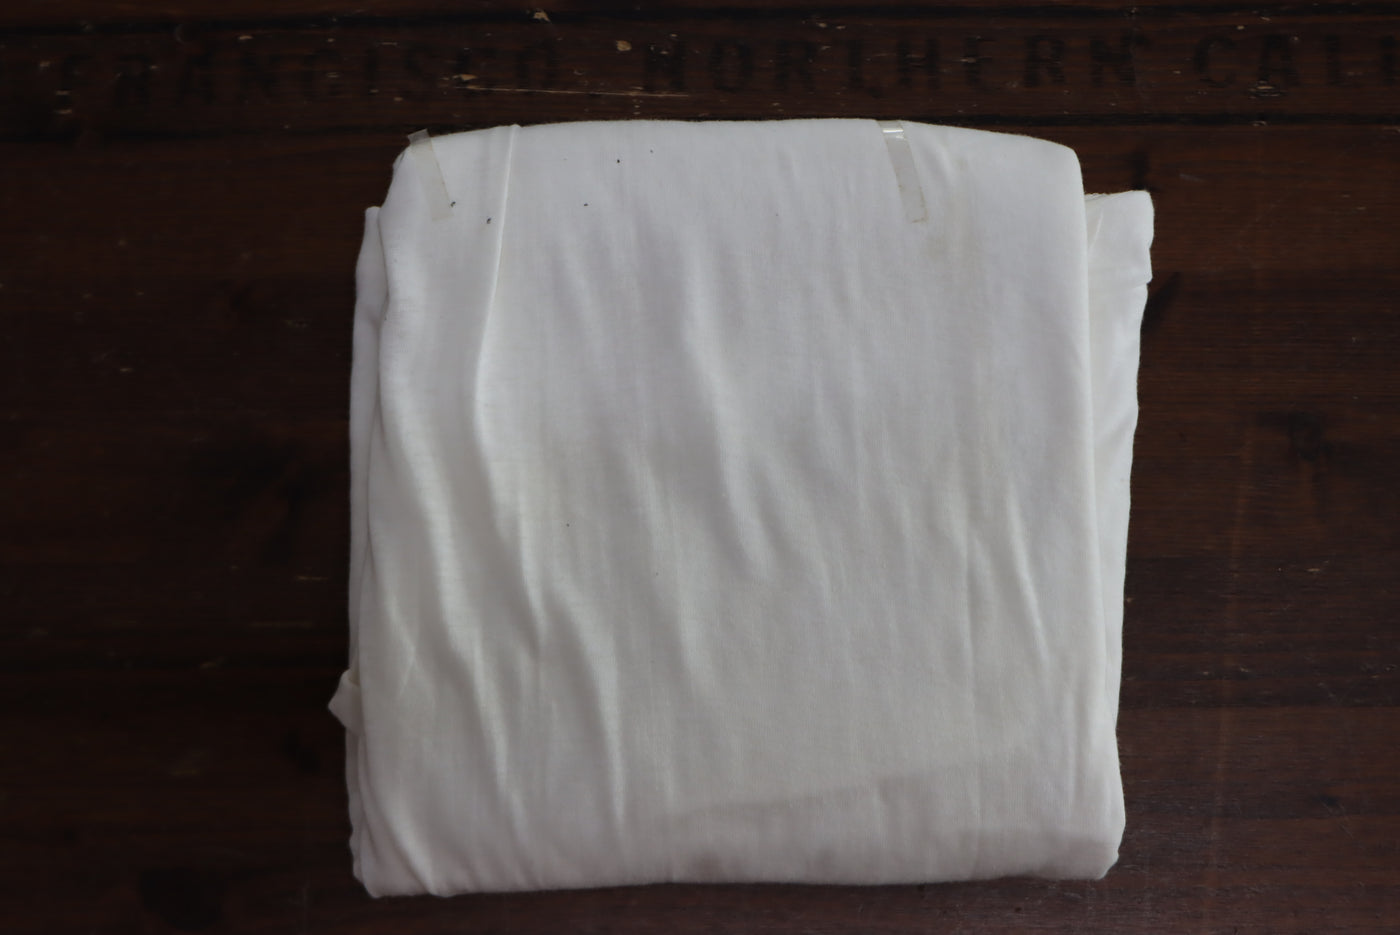 Big Smith made in USA t-shirt vintage box da 3pz bianca mezza manica nuova deadstock